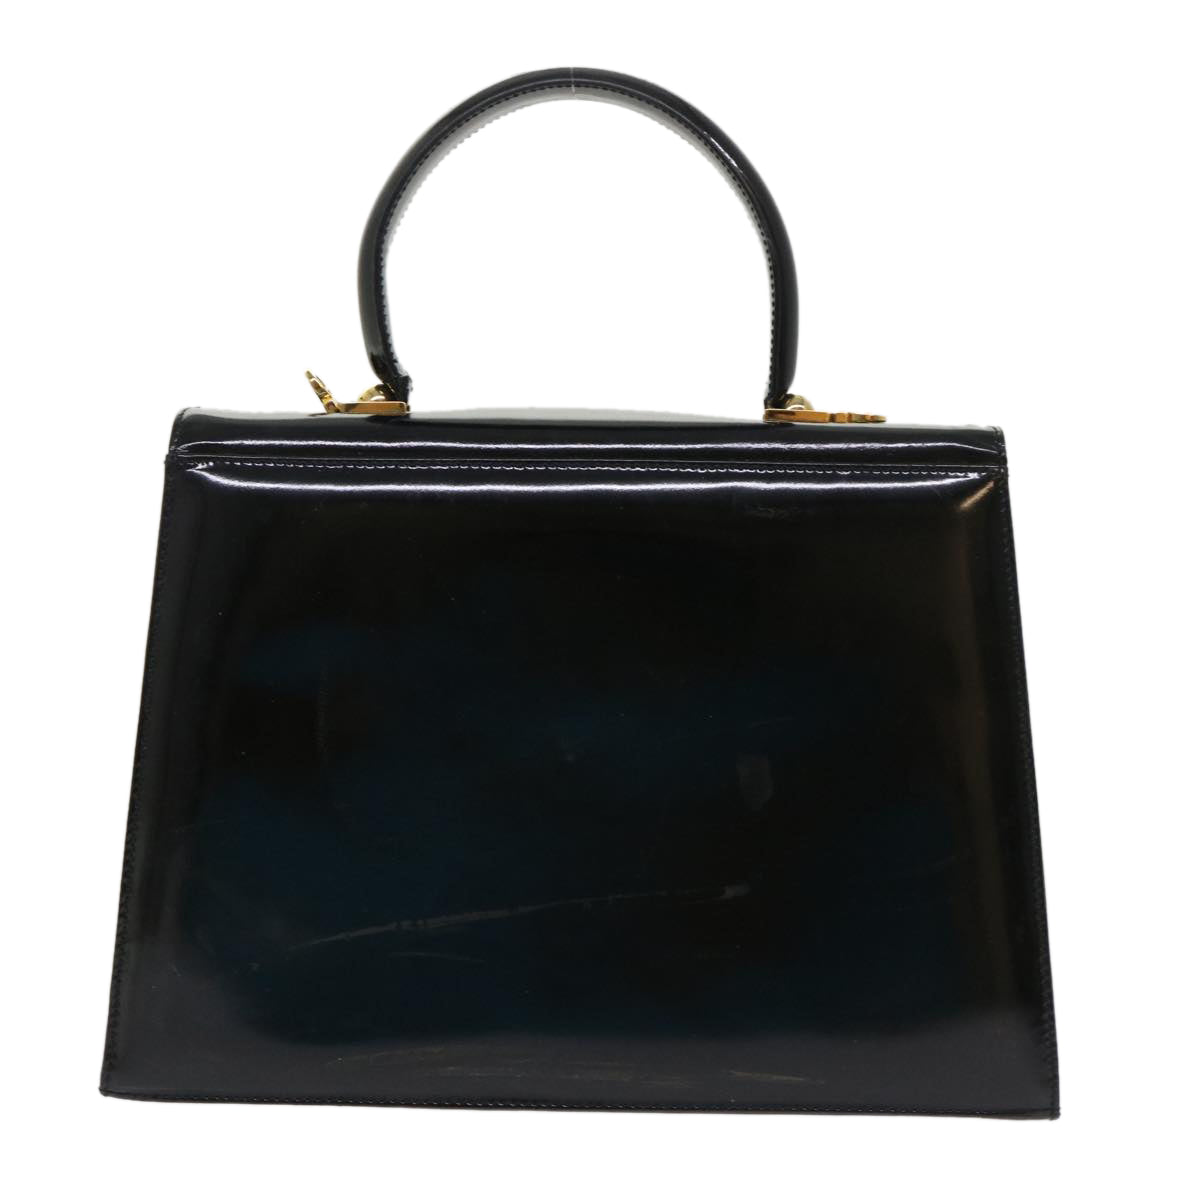 Salvatore Ferragamo Gancini Hand Bag Patent leather Black Auth 46963 - 0